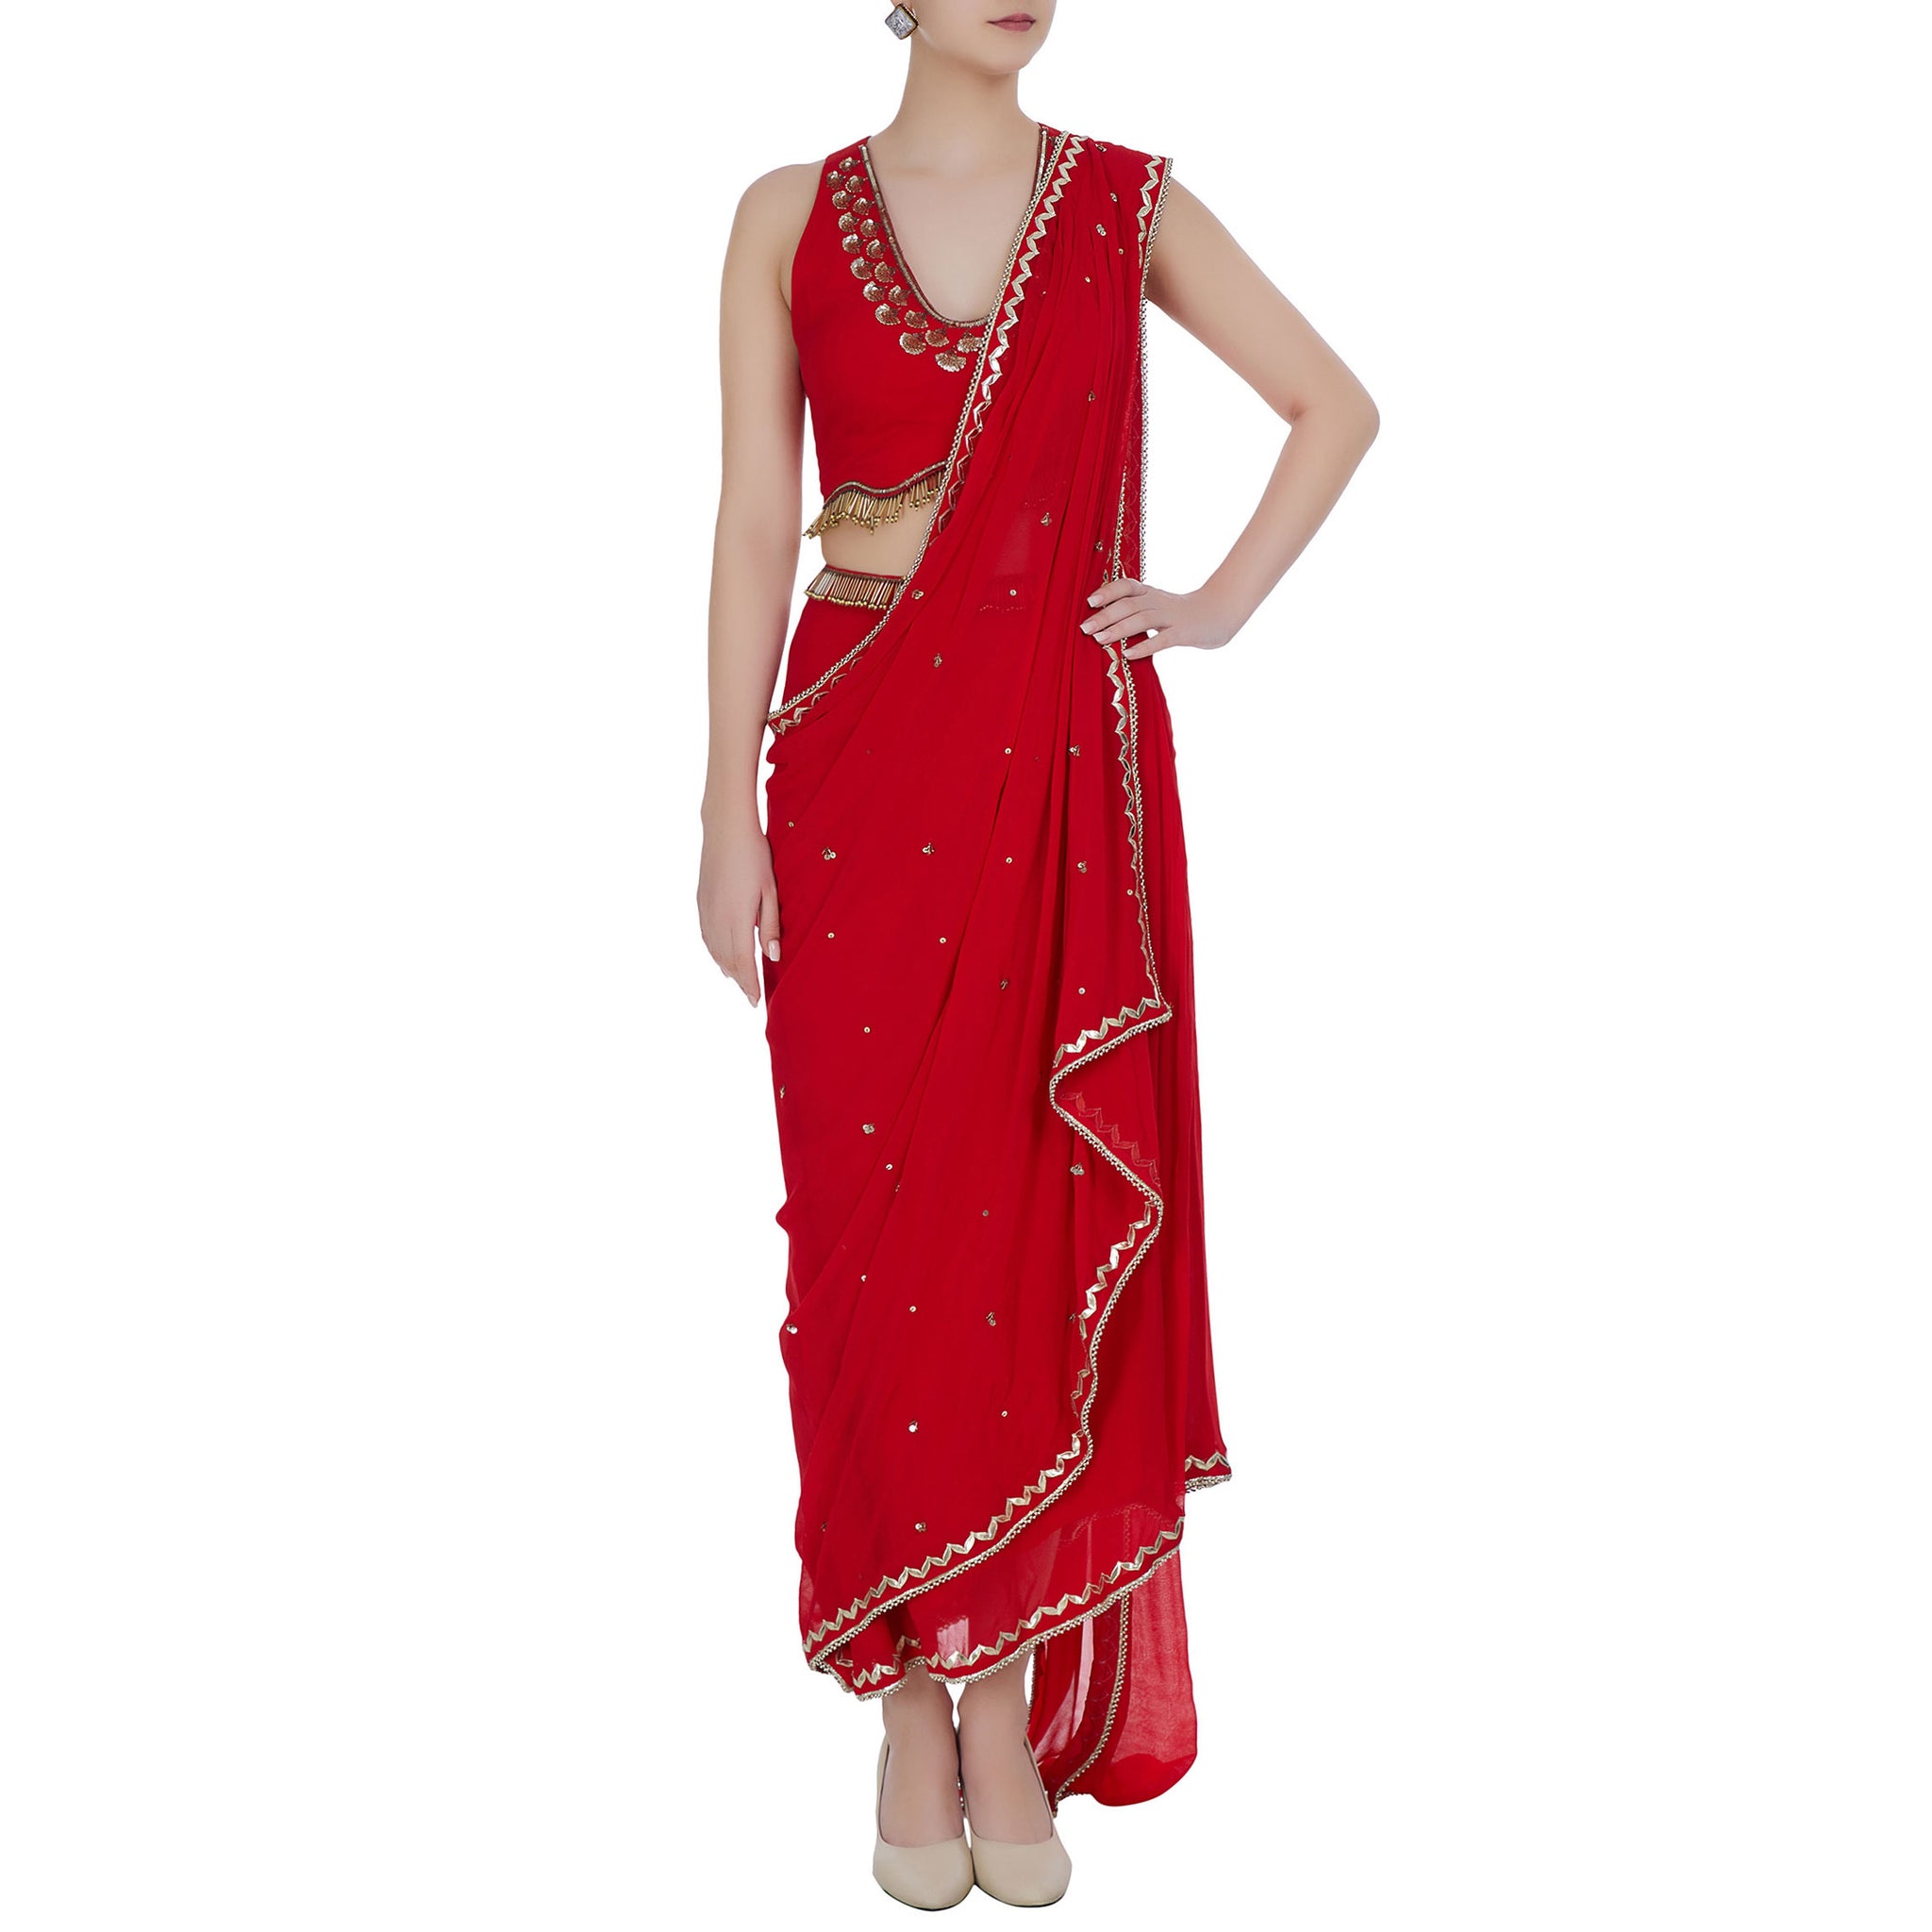 Embroidered Pre-Draped sari